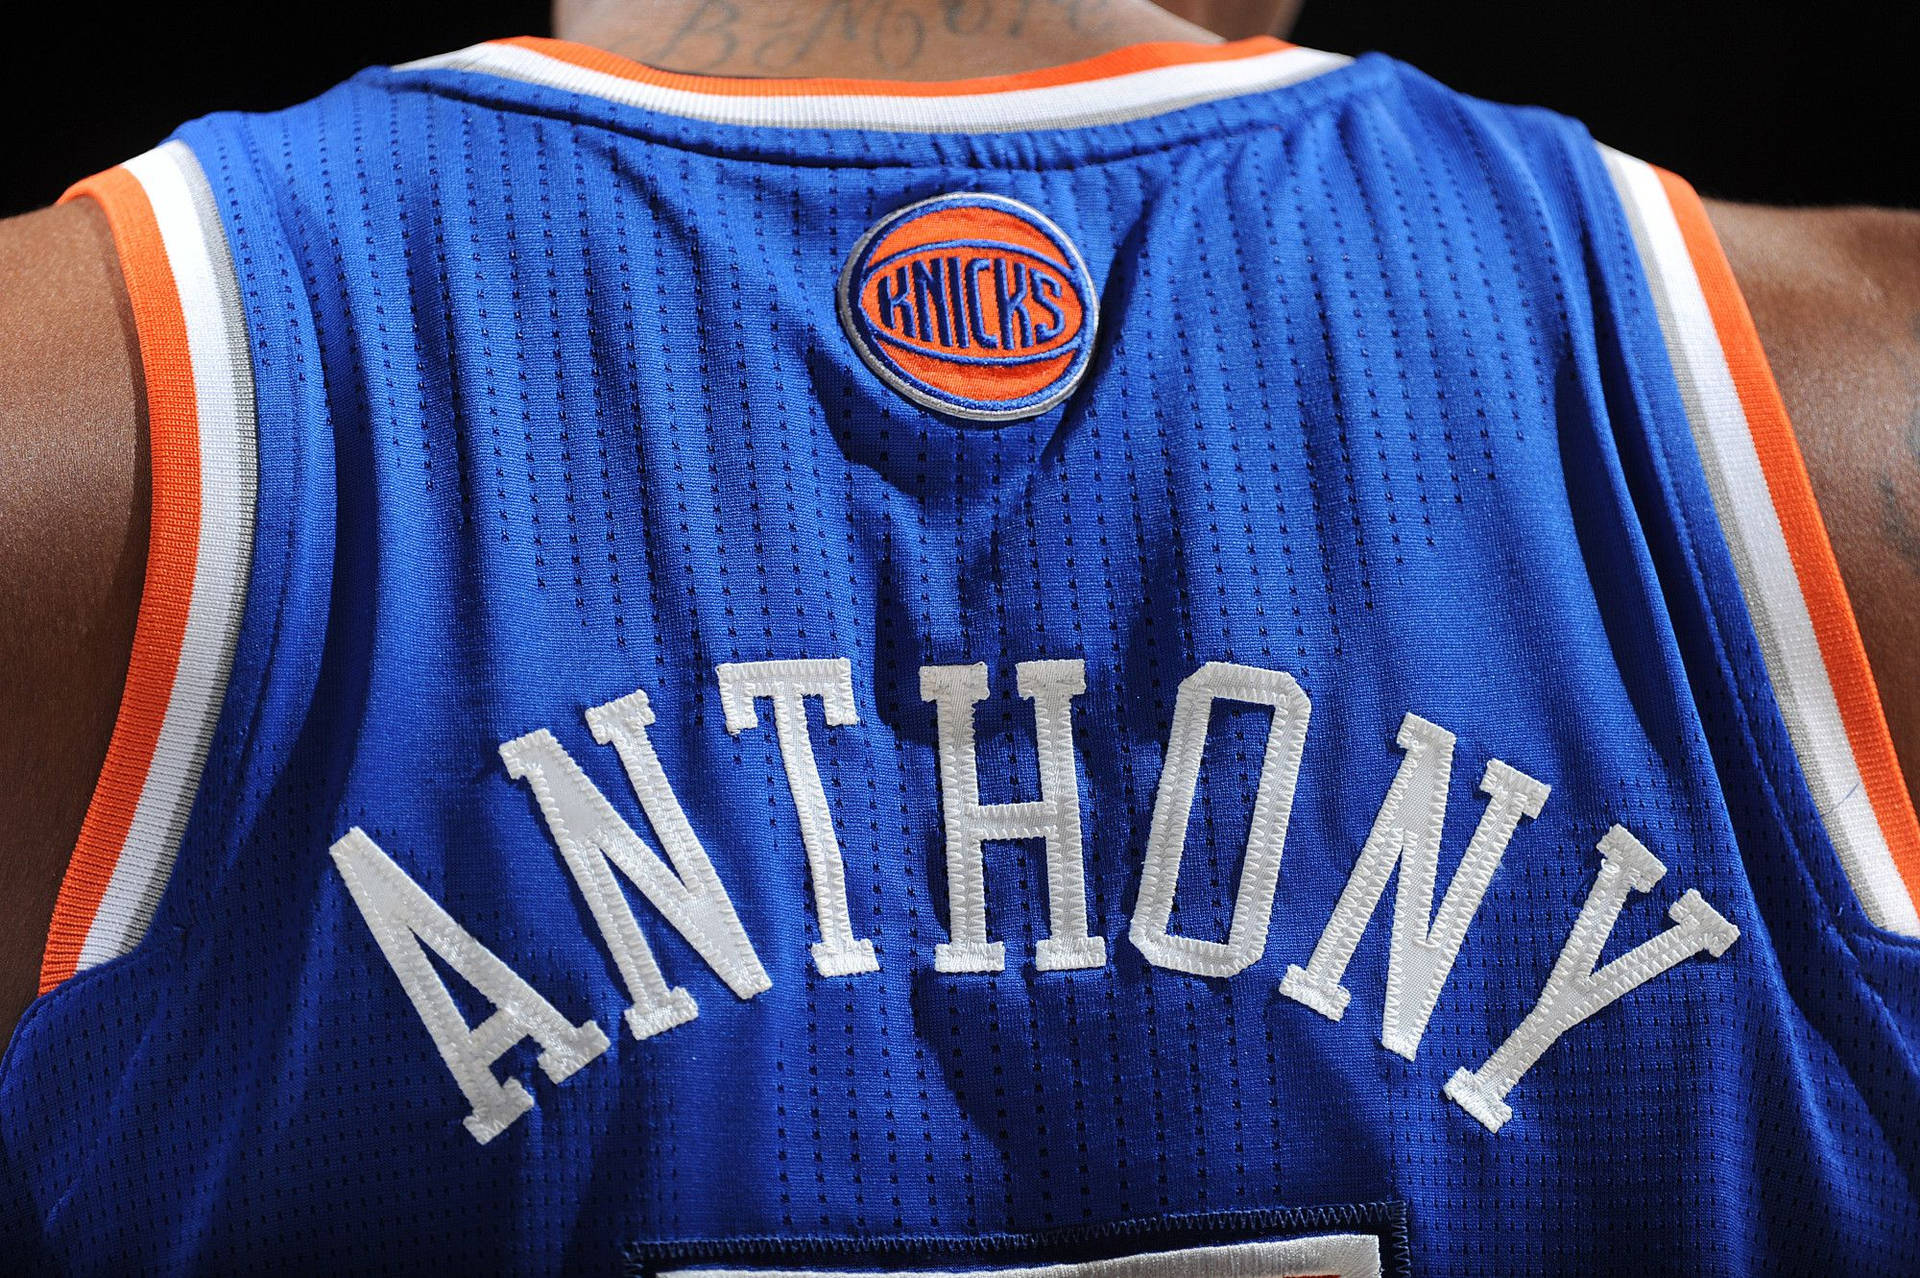 New York Knicks Anthony Jersey Background